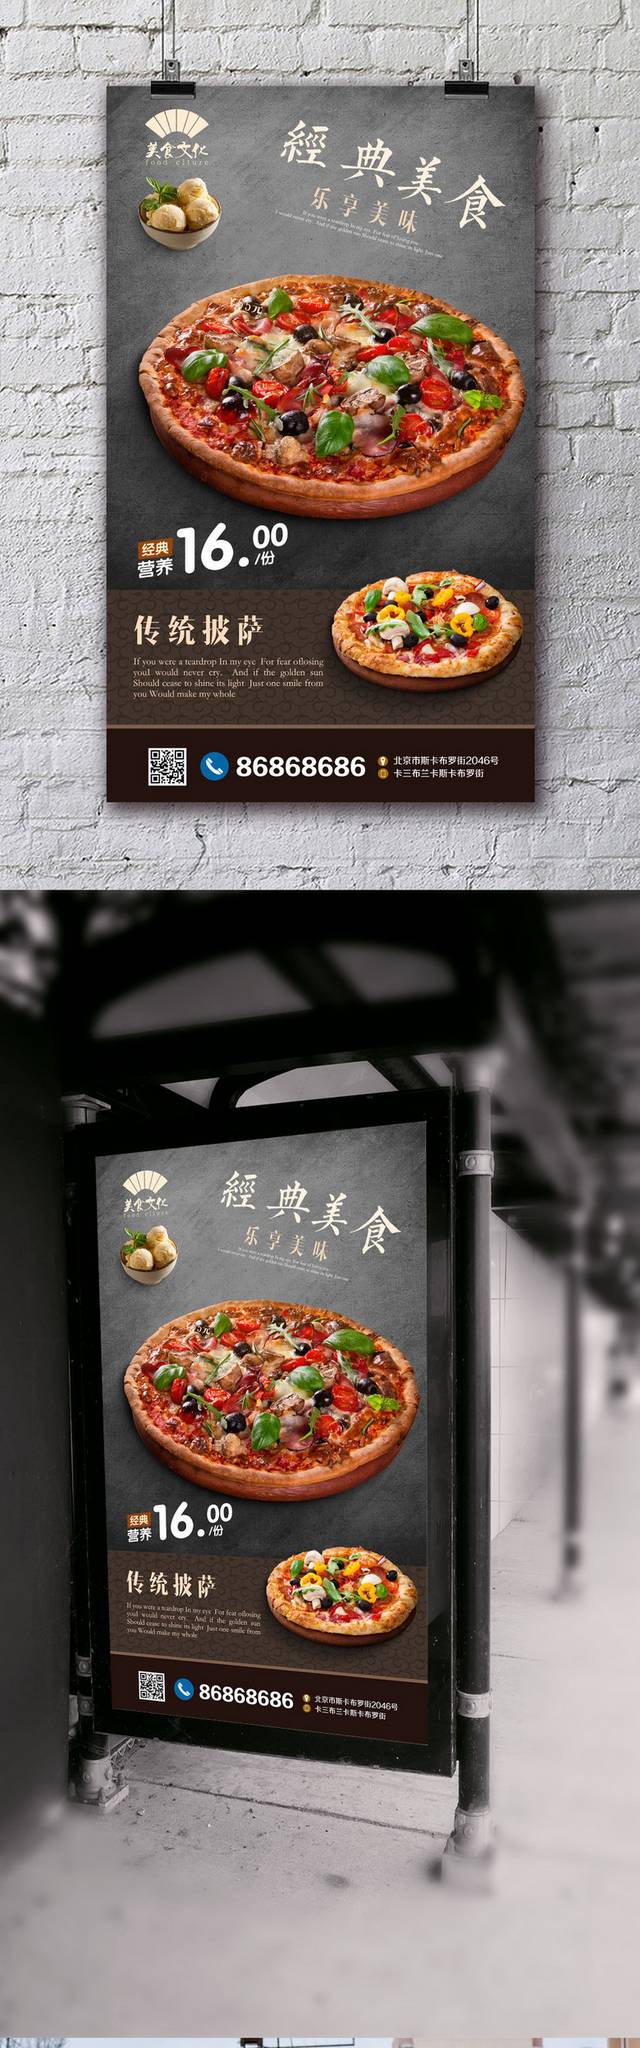 古典披萨宣传海报设计